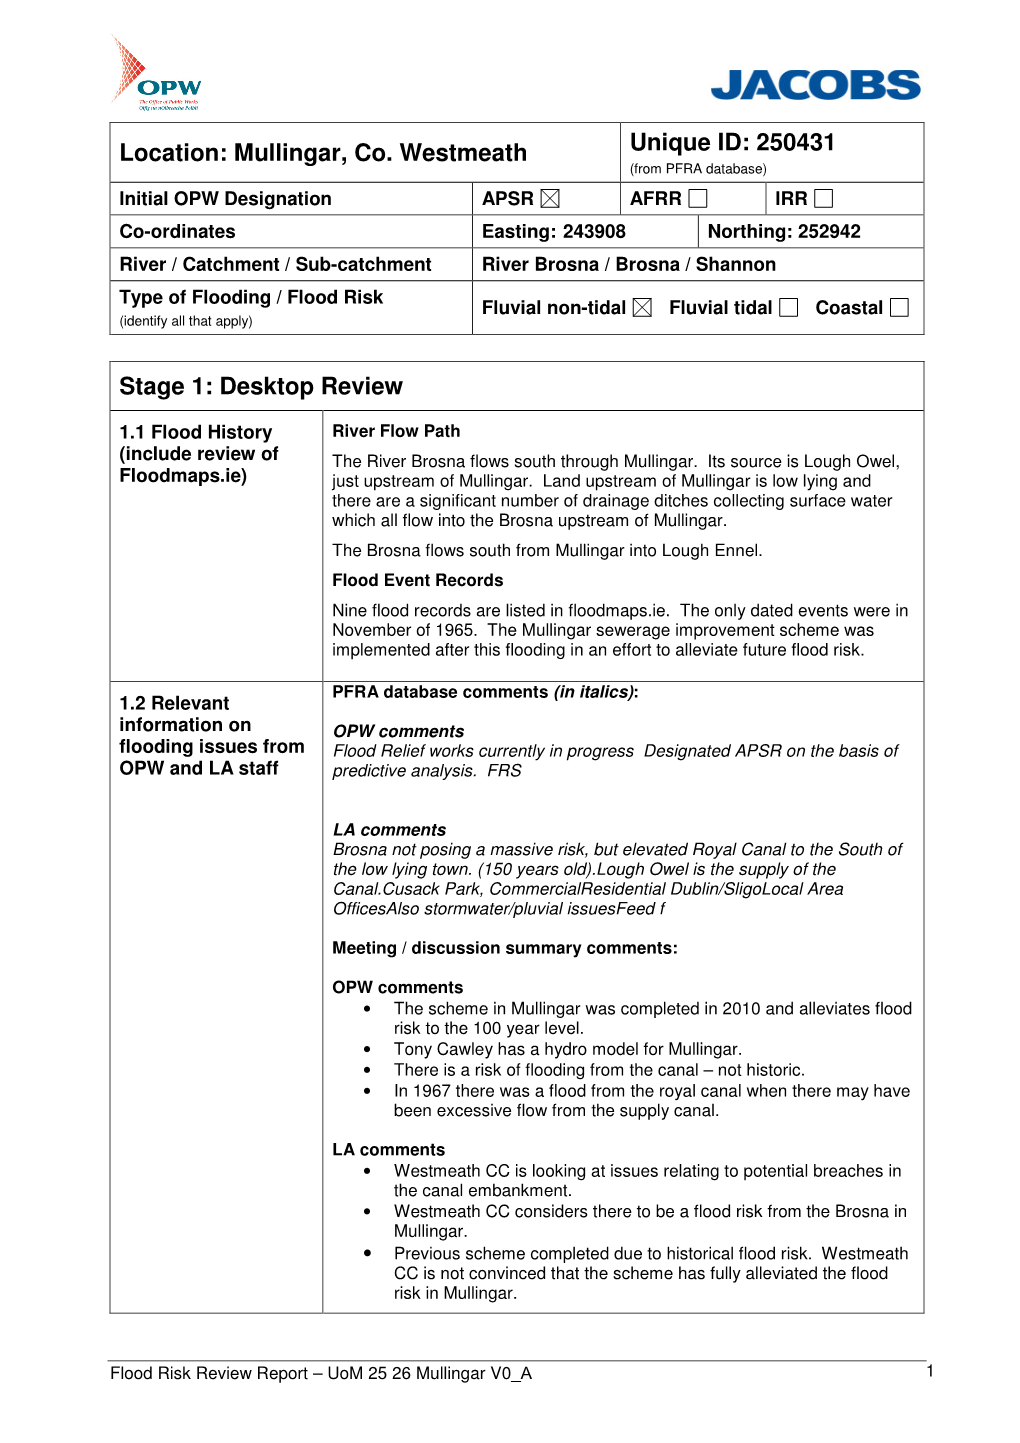 Mullingar, Co. Westmeath Unique ID: 250431 Stage 1: Desktop Review